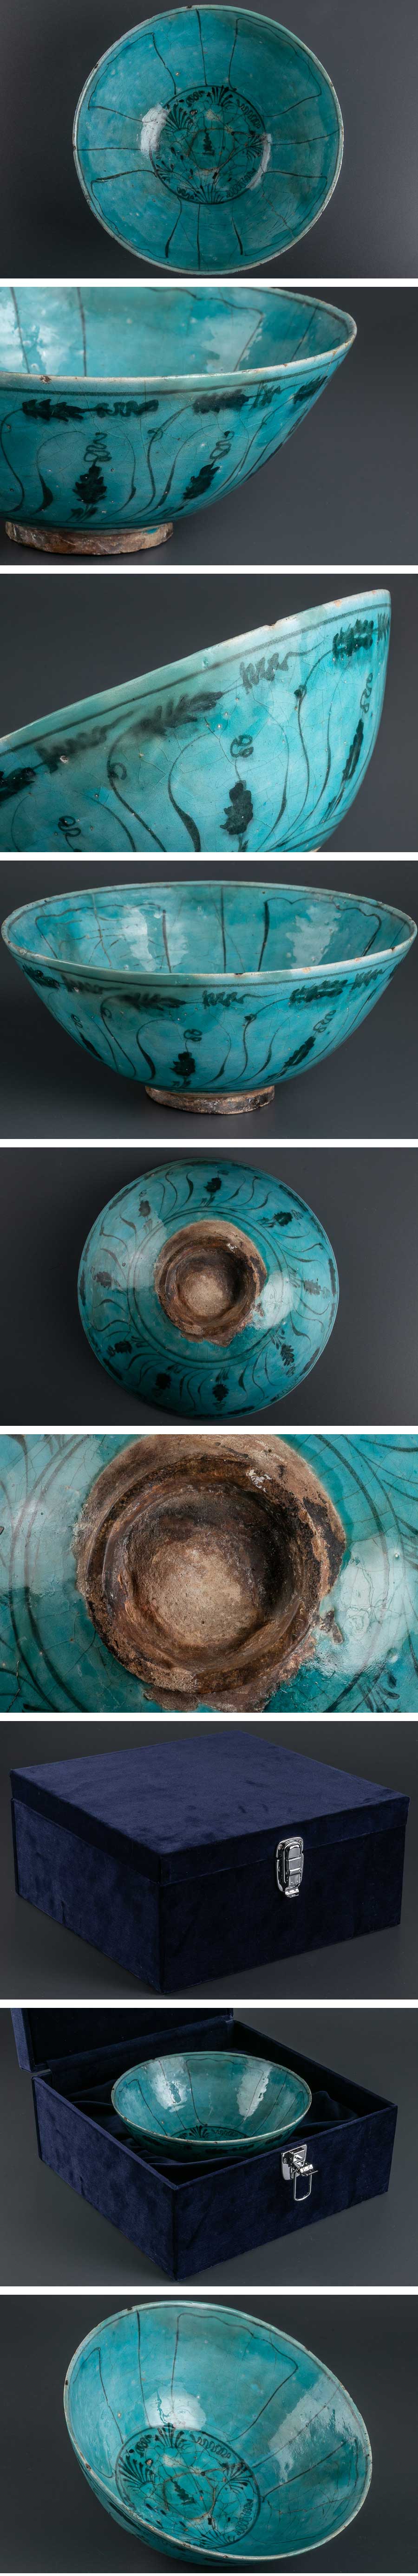 値下げ幅『 ペルシャ 古陶磁 藍釉草花絵鉢 箱付 8613 』 発掘品 考古学 イラン 銀化 ラスター彩 古美術 西洋美術 イスラム陶器